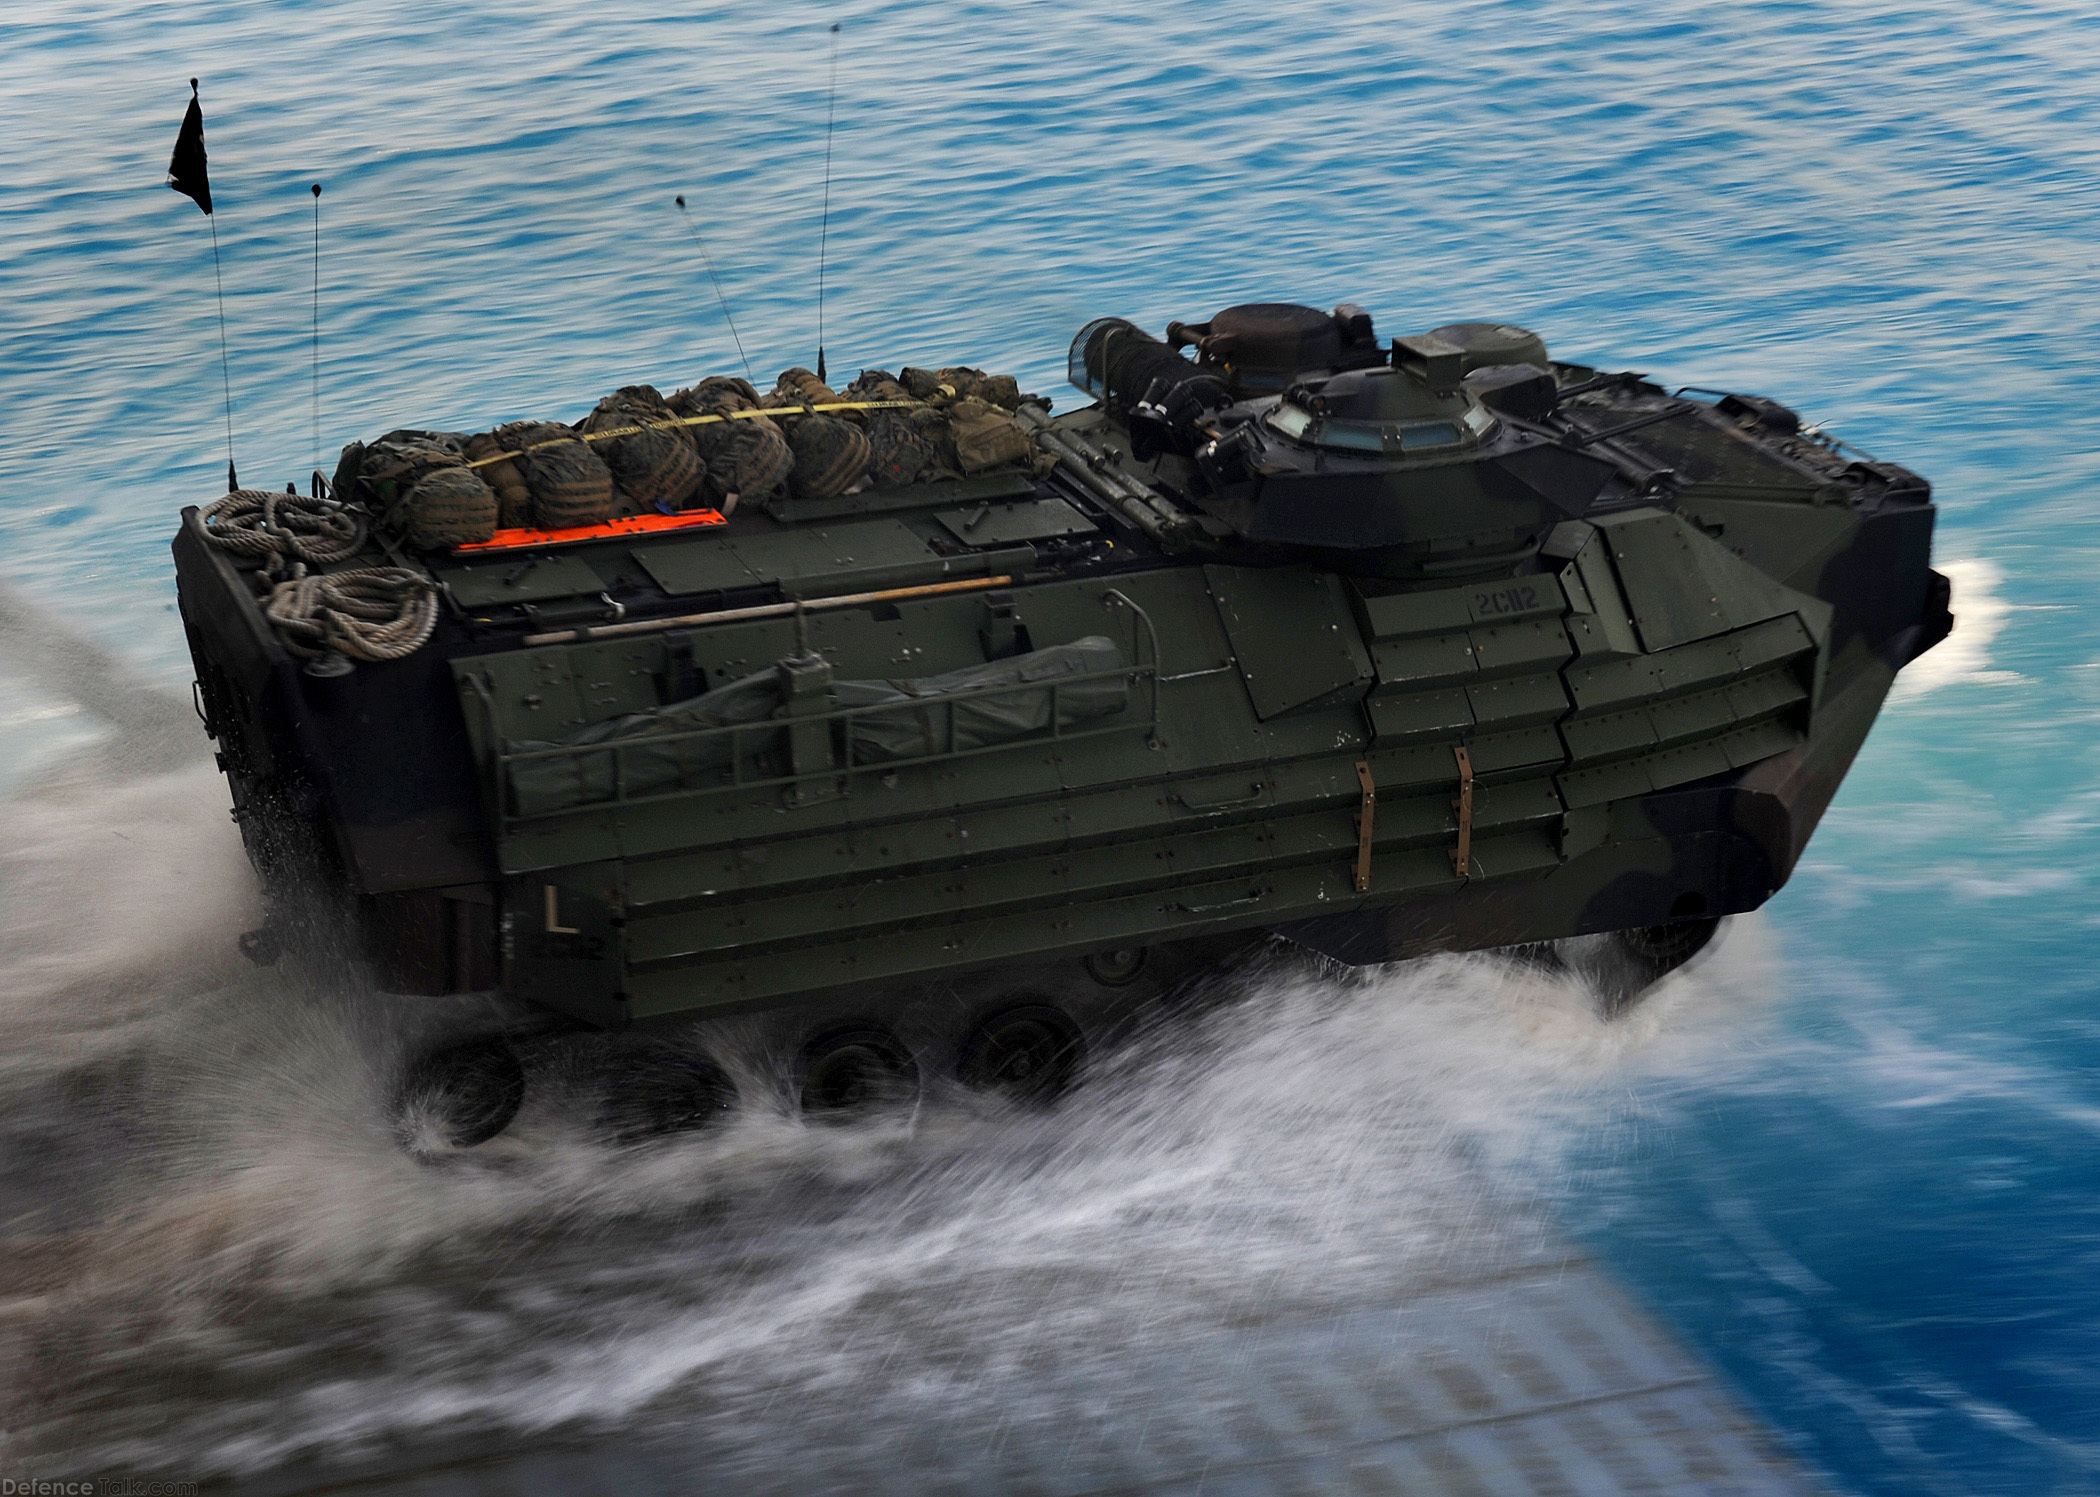 Amphibious Assault Vehicle (AAV) - Bright Star 2009